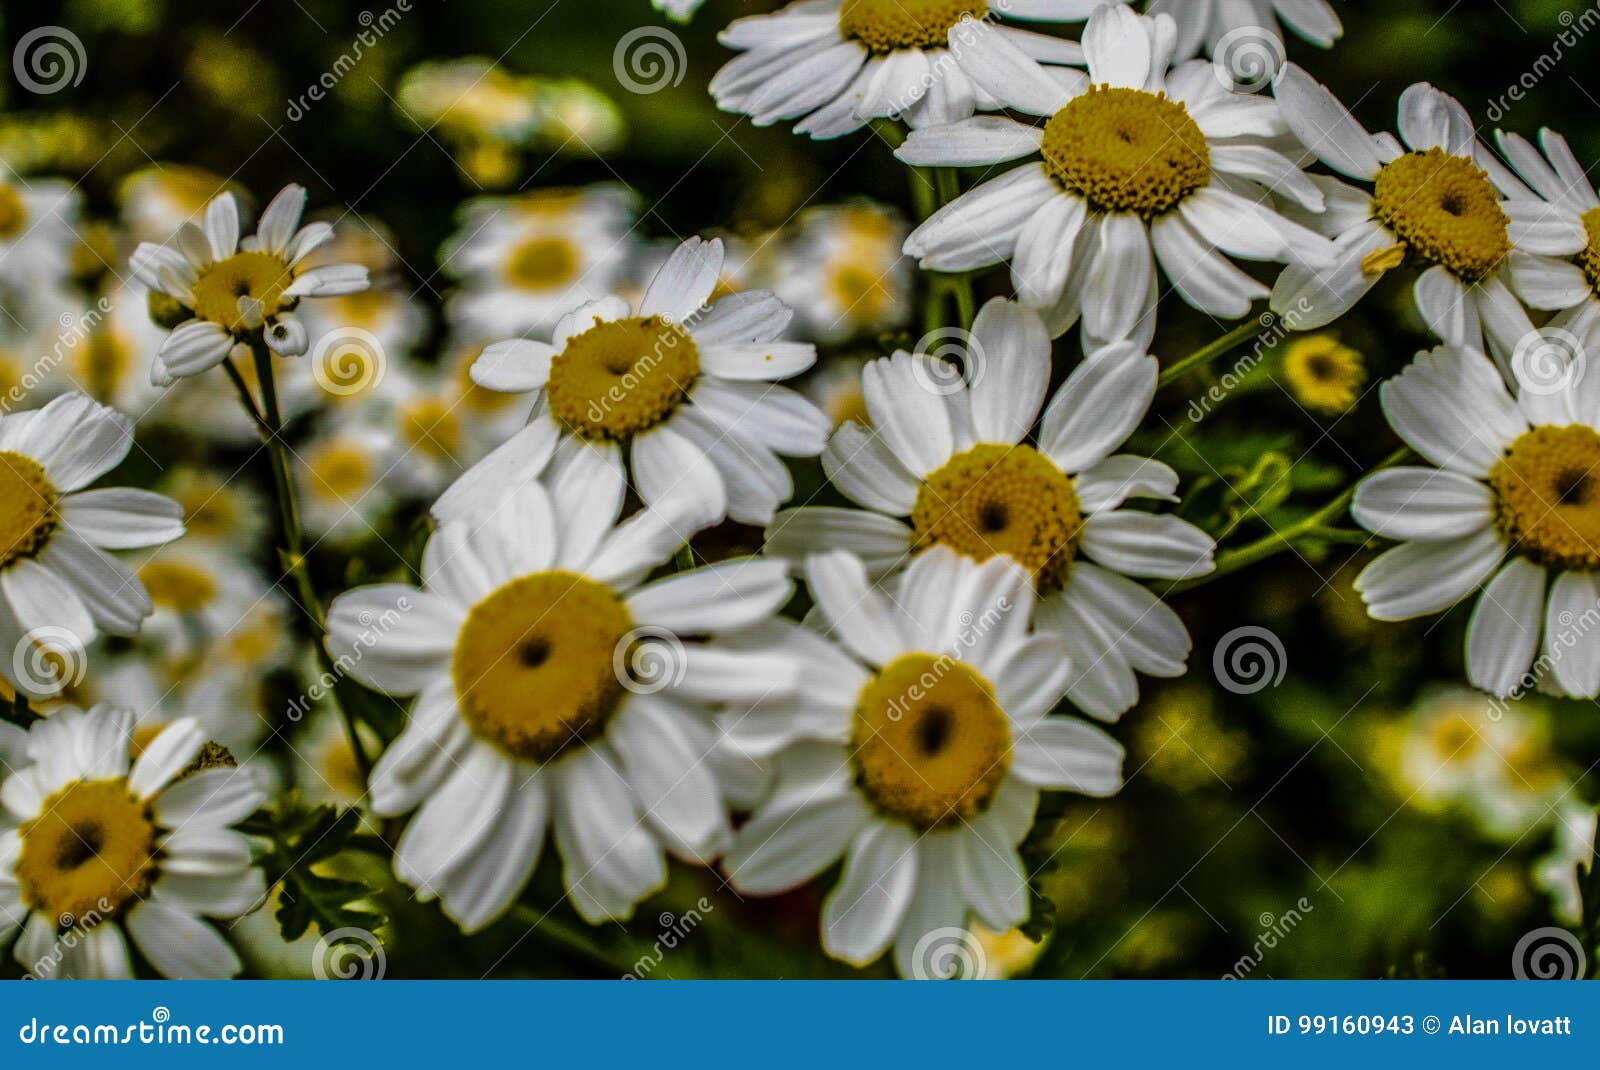 daisy flowers in a field bedfordshire macro lens